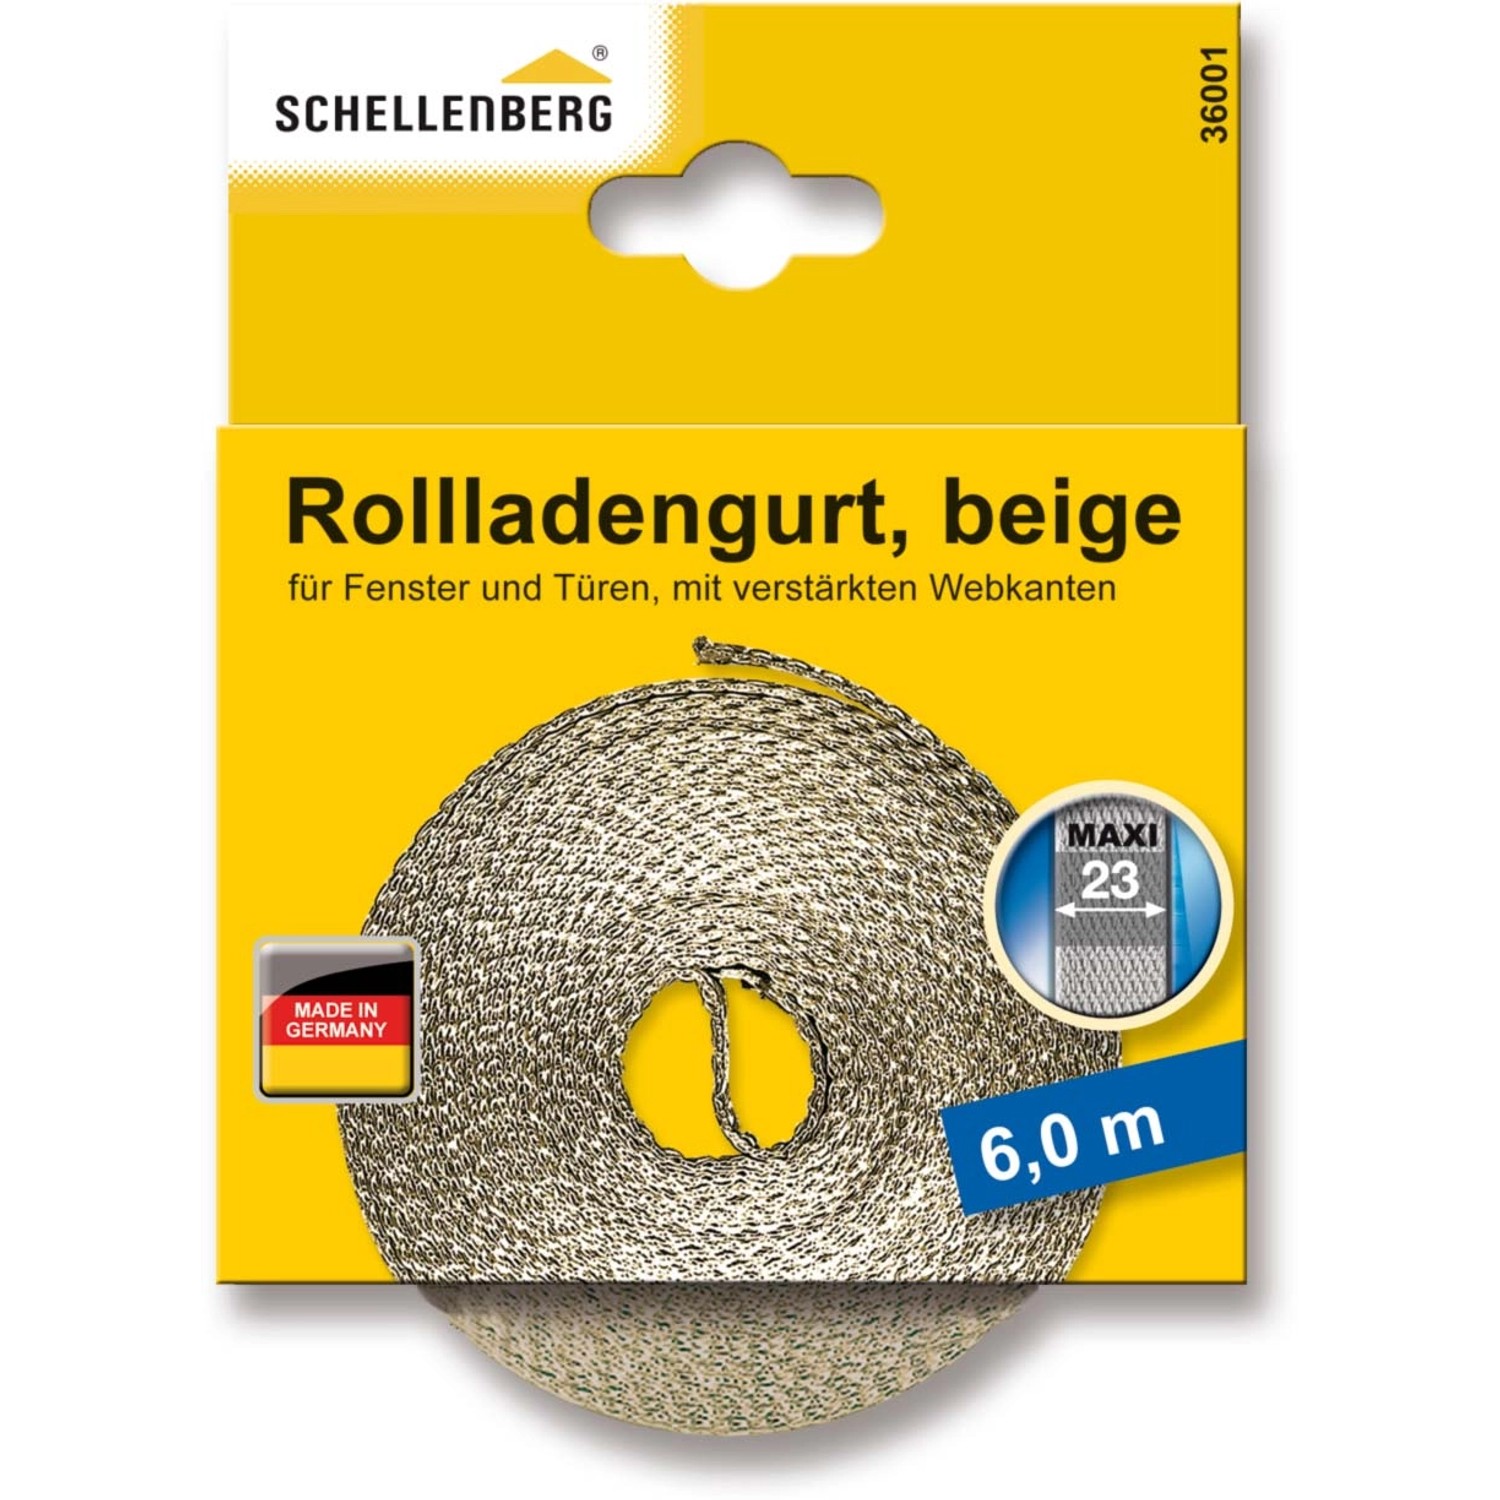 Schellenberg Rollladengurt Maxi 23 mm 6 m Beige von Schellenberg